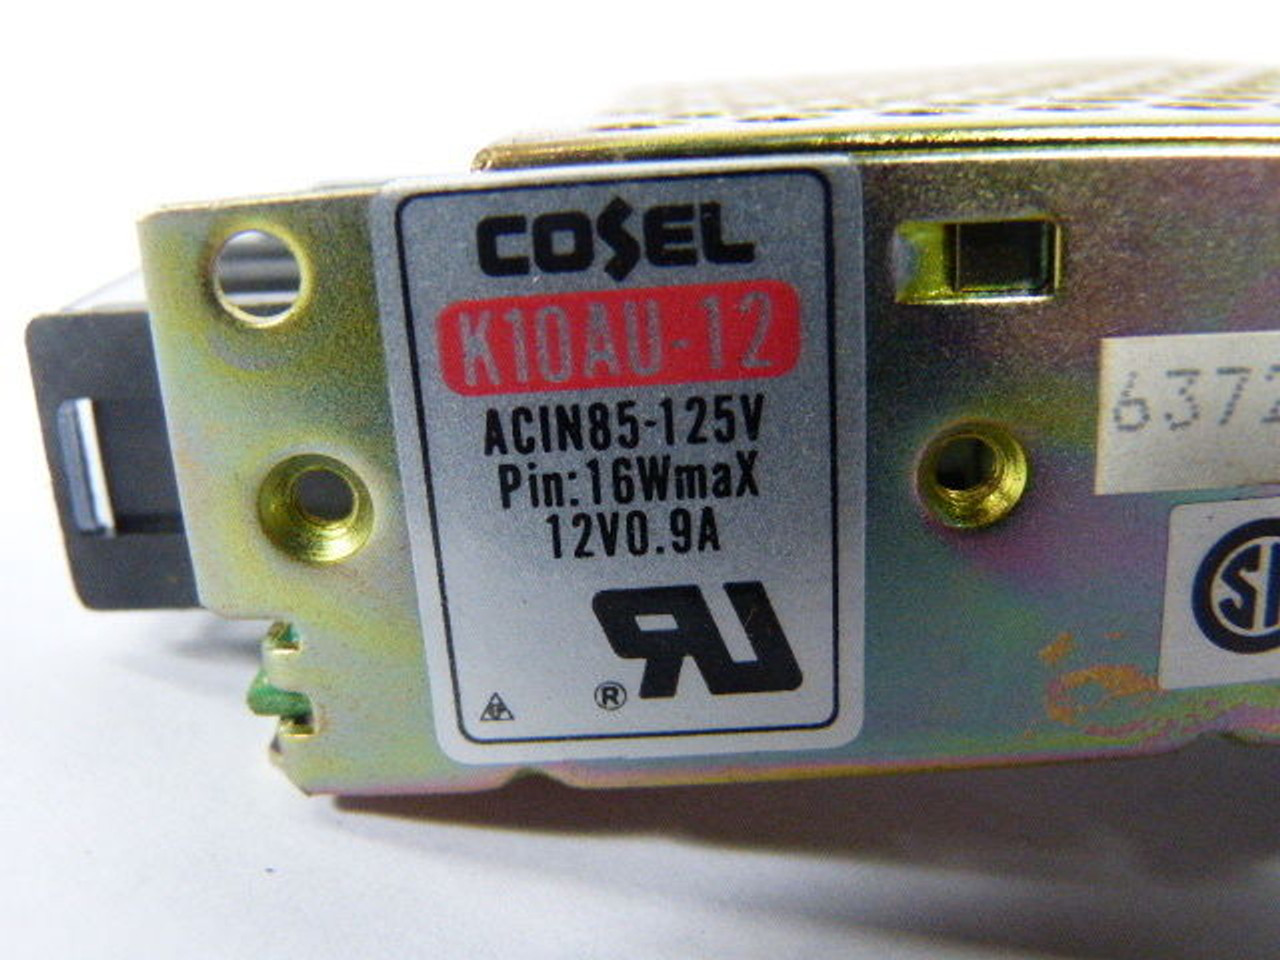 Castel K10AU-12 Power Supply 12V 10.8W 0.9A USED